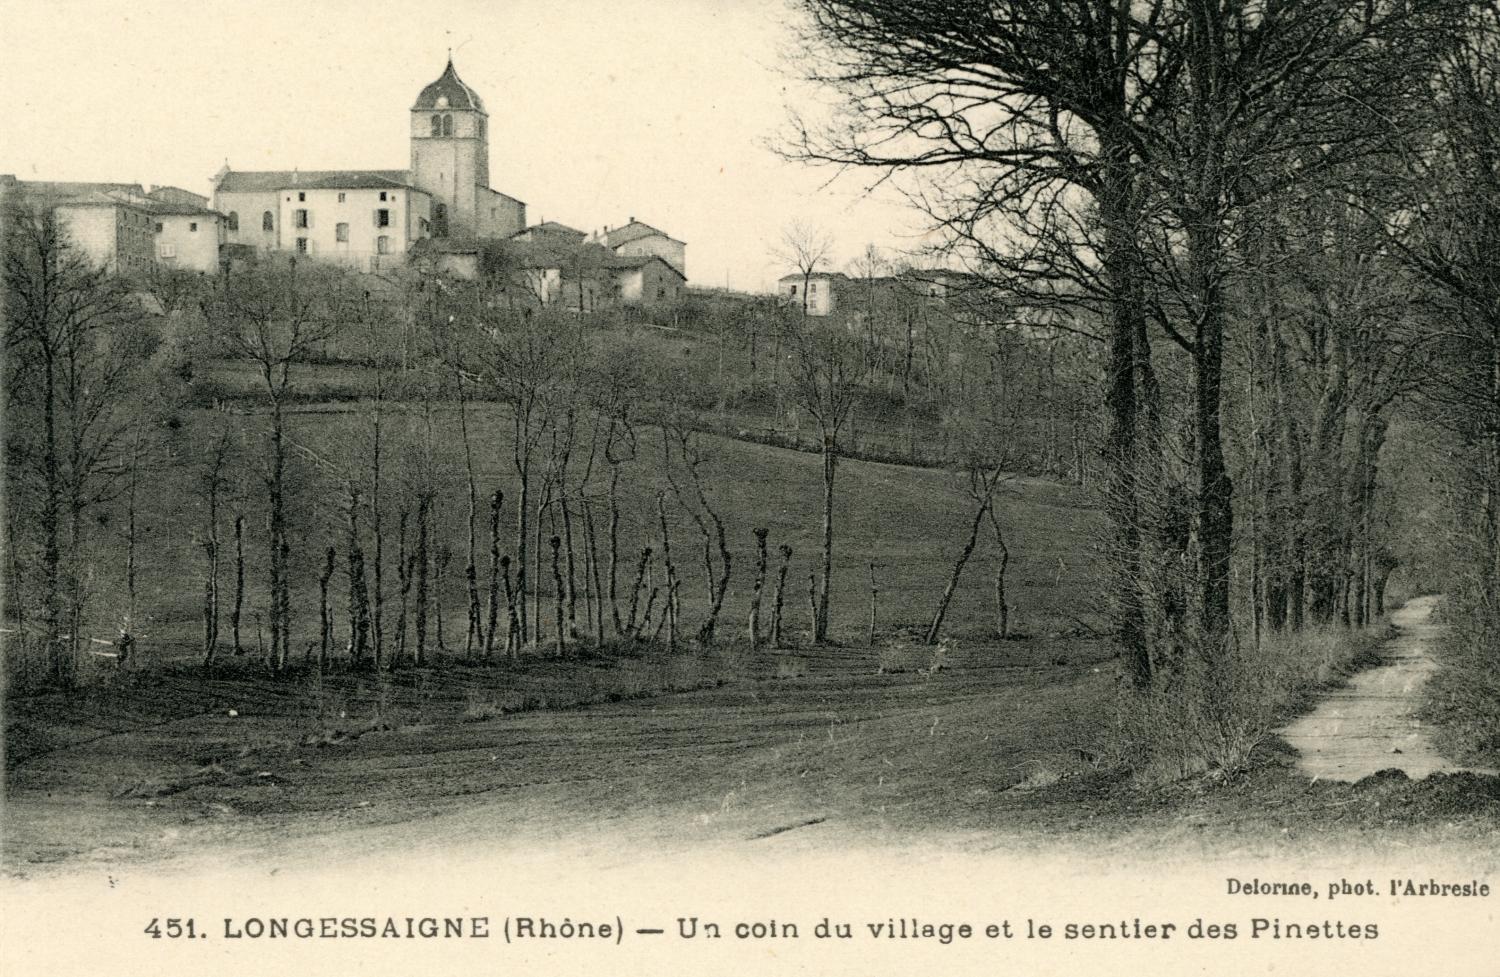 Longessaigne (Rhône). - Un coin du village et le sentier des Pinettes